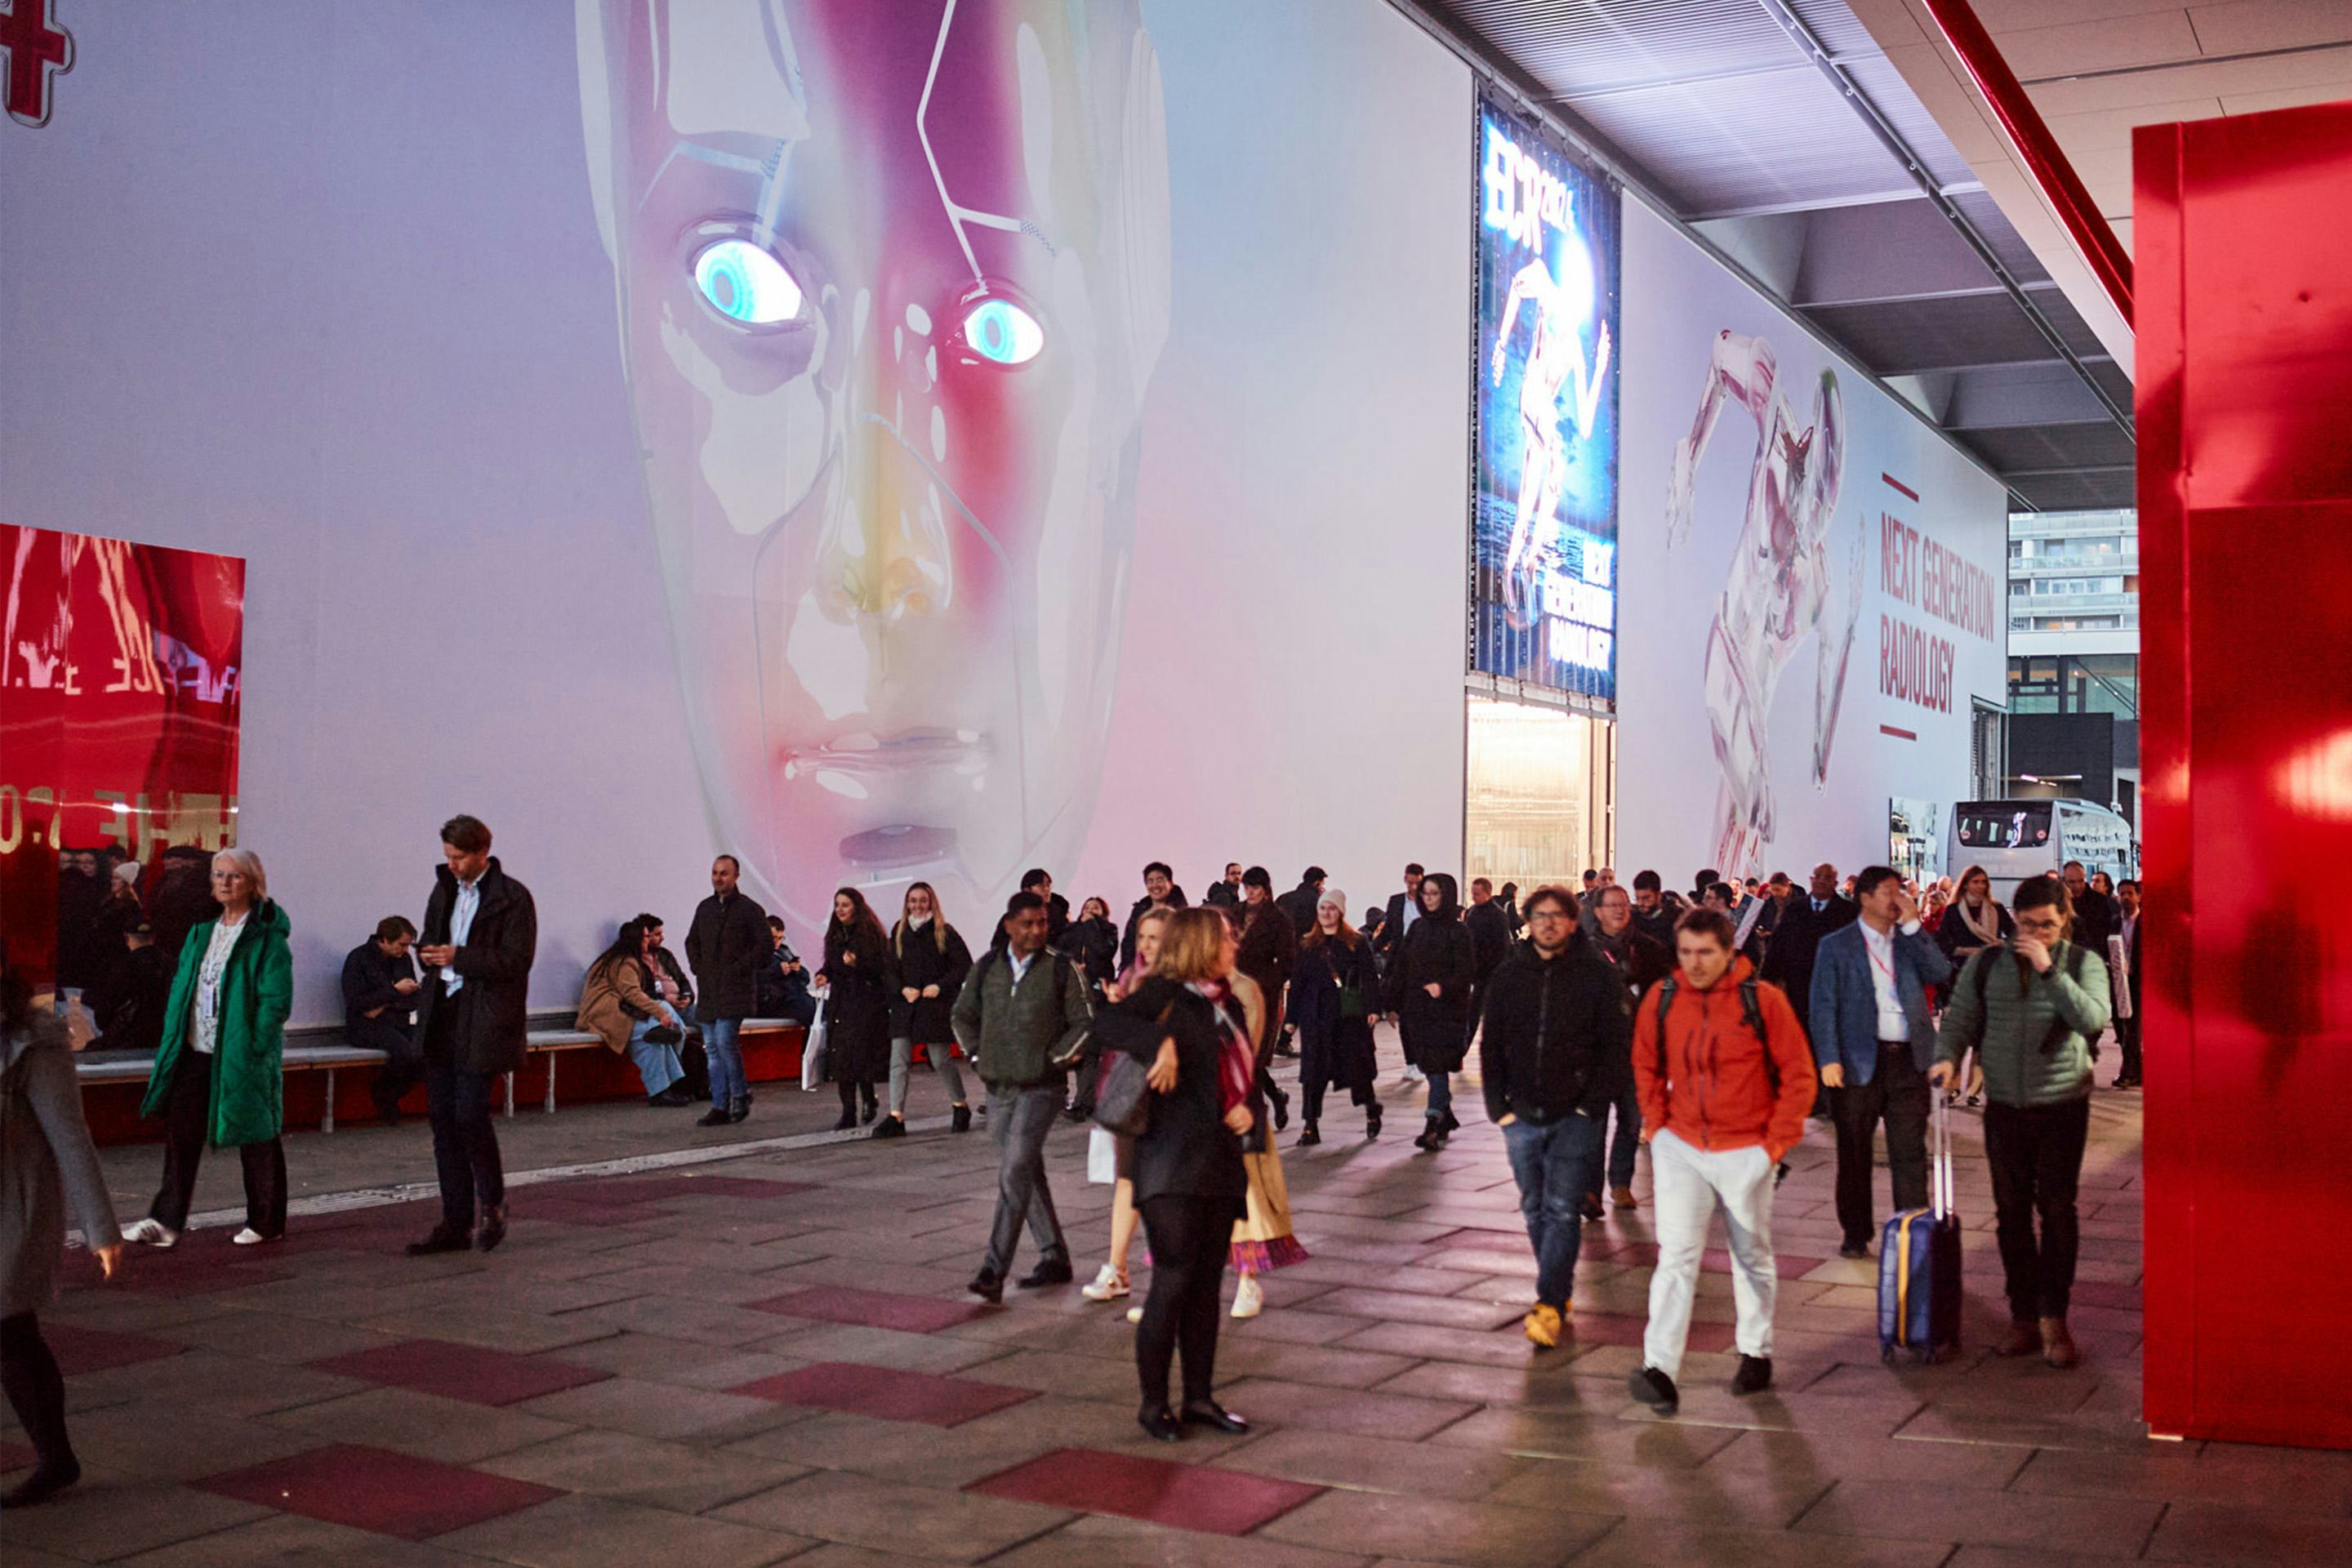 Foto: Eingang mit Roboterkopf auf einem LED Screen und vielen Menschen